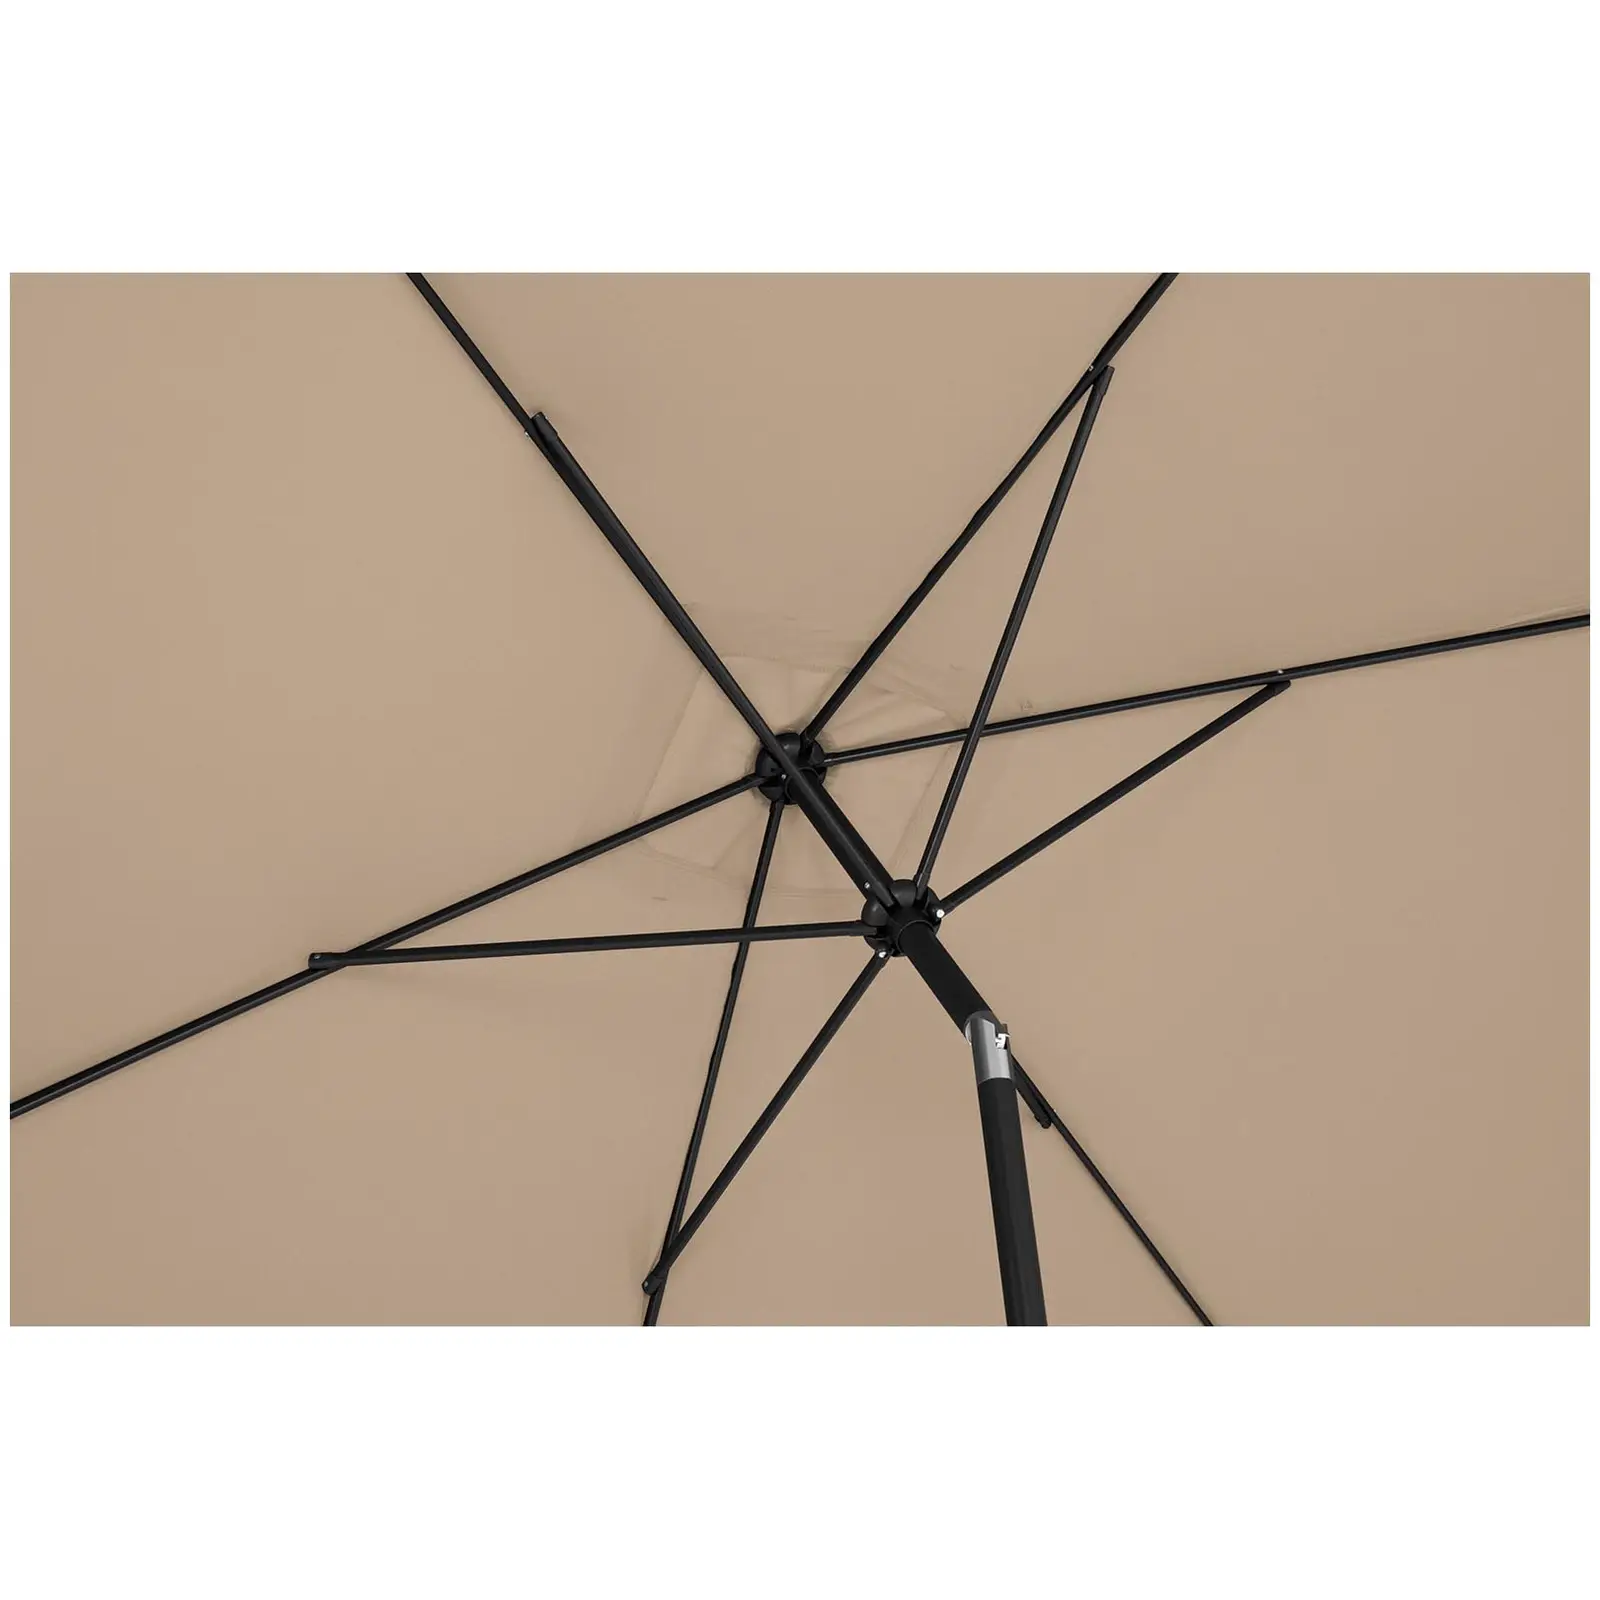 Parasol ogrodowy - szarobrązowy - prostokątny - 200 x 300 cm - uchylny